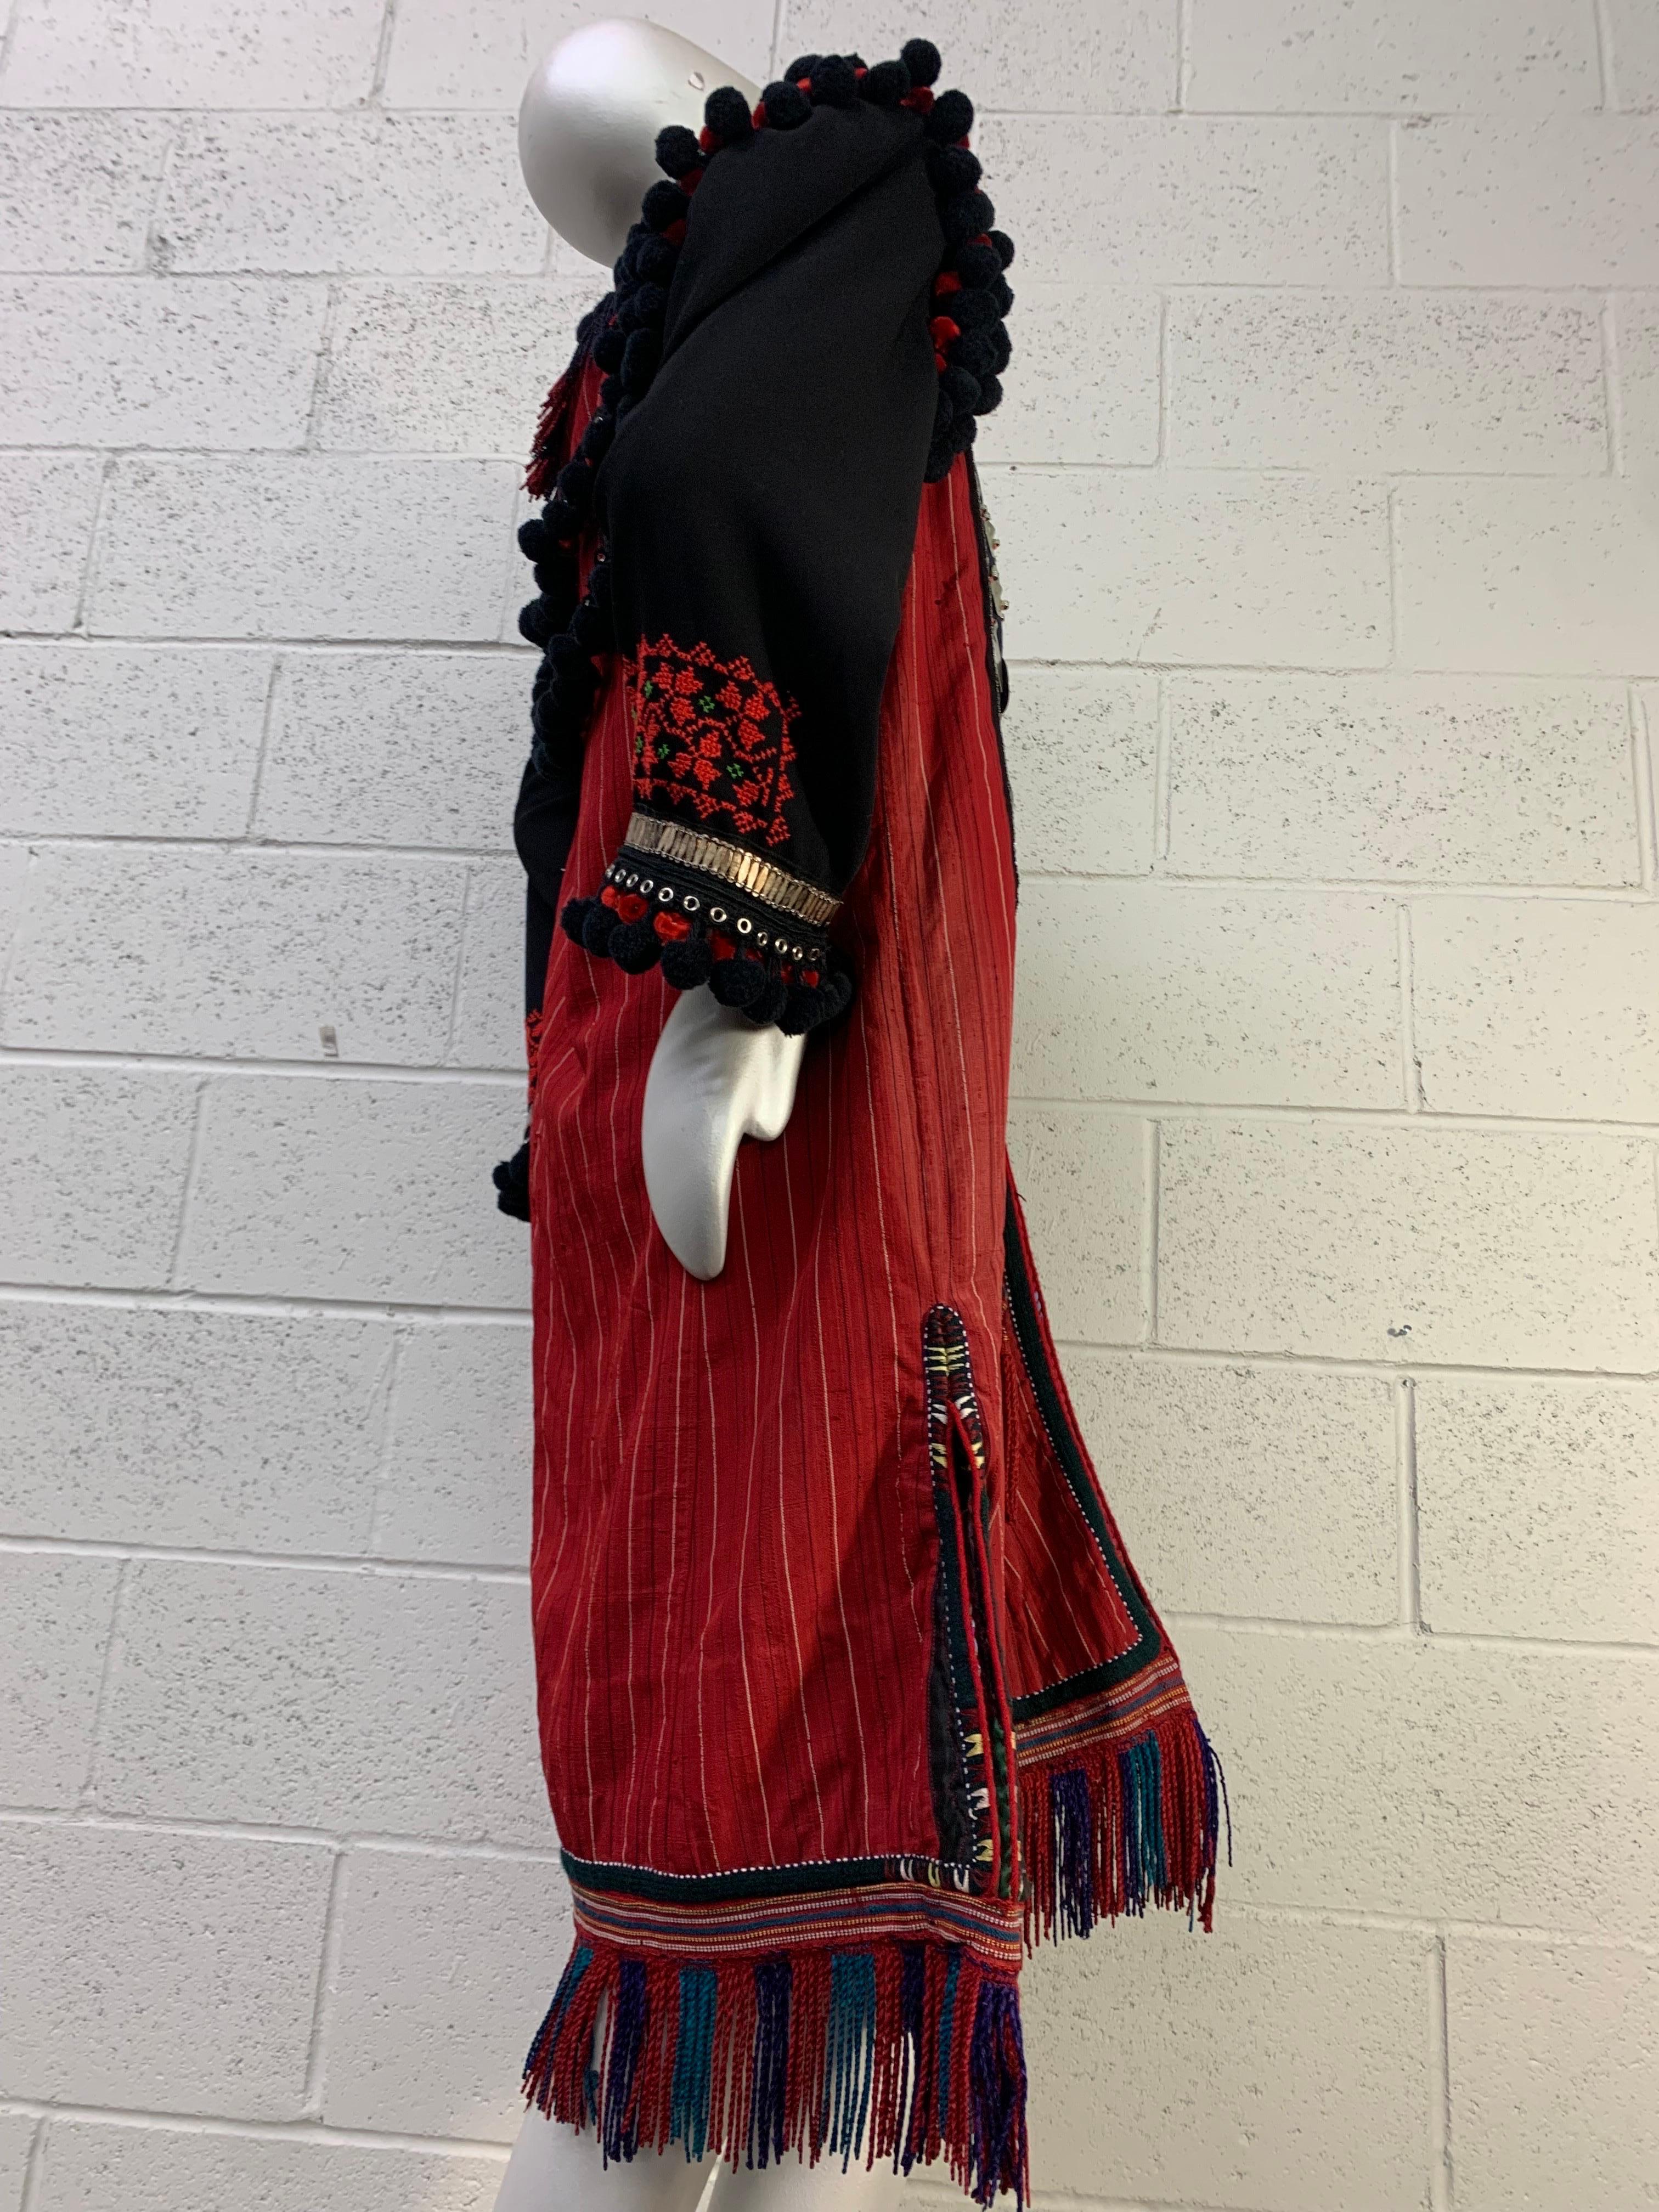 Manteau de cérémonie folklorique en coton rouge et noir de Torso Creations avec médaillons argentés et franges à pompons : Les épaules structurées sont surmontées de pompons rouges et noirs. L'ourlet est frangé. Poches latérales fendues avec